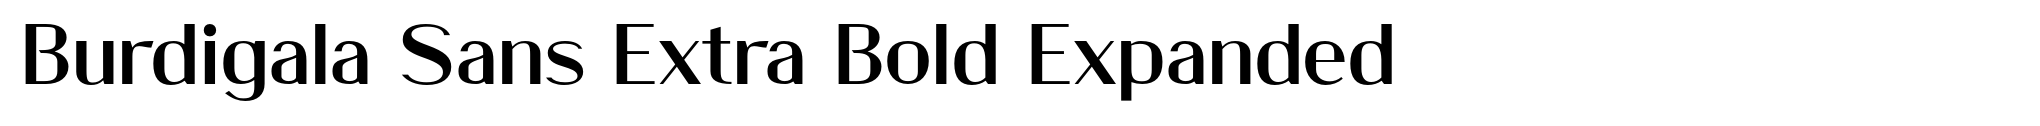 Burdigala Sans Extra Bold Expanded image